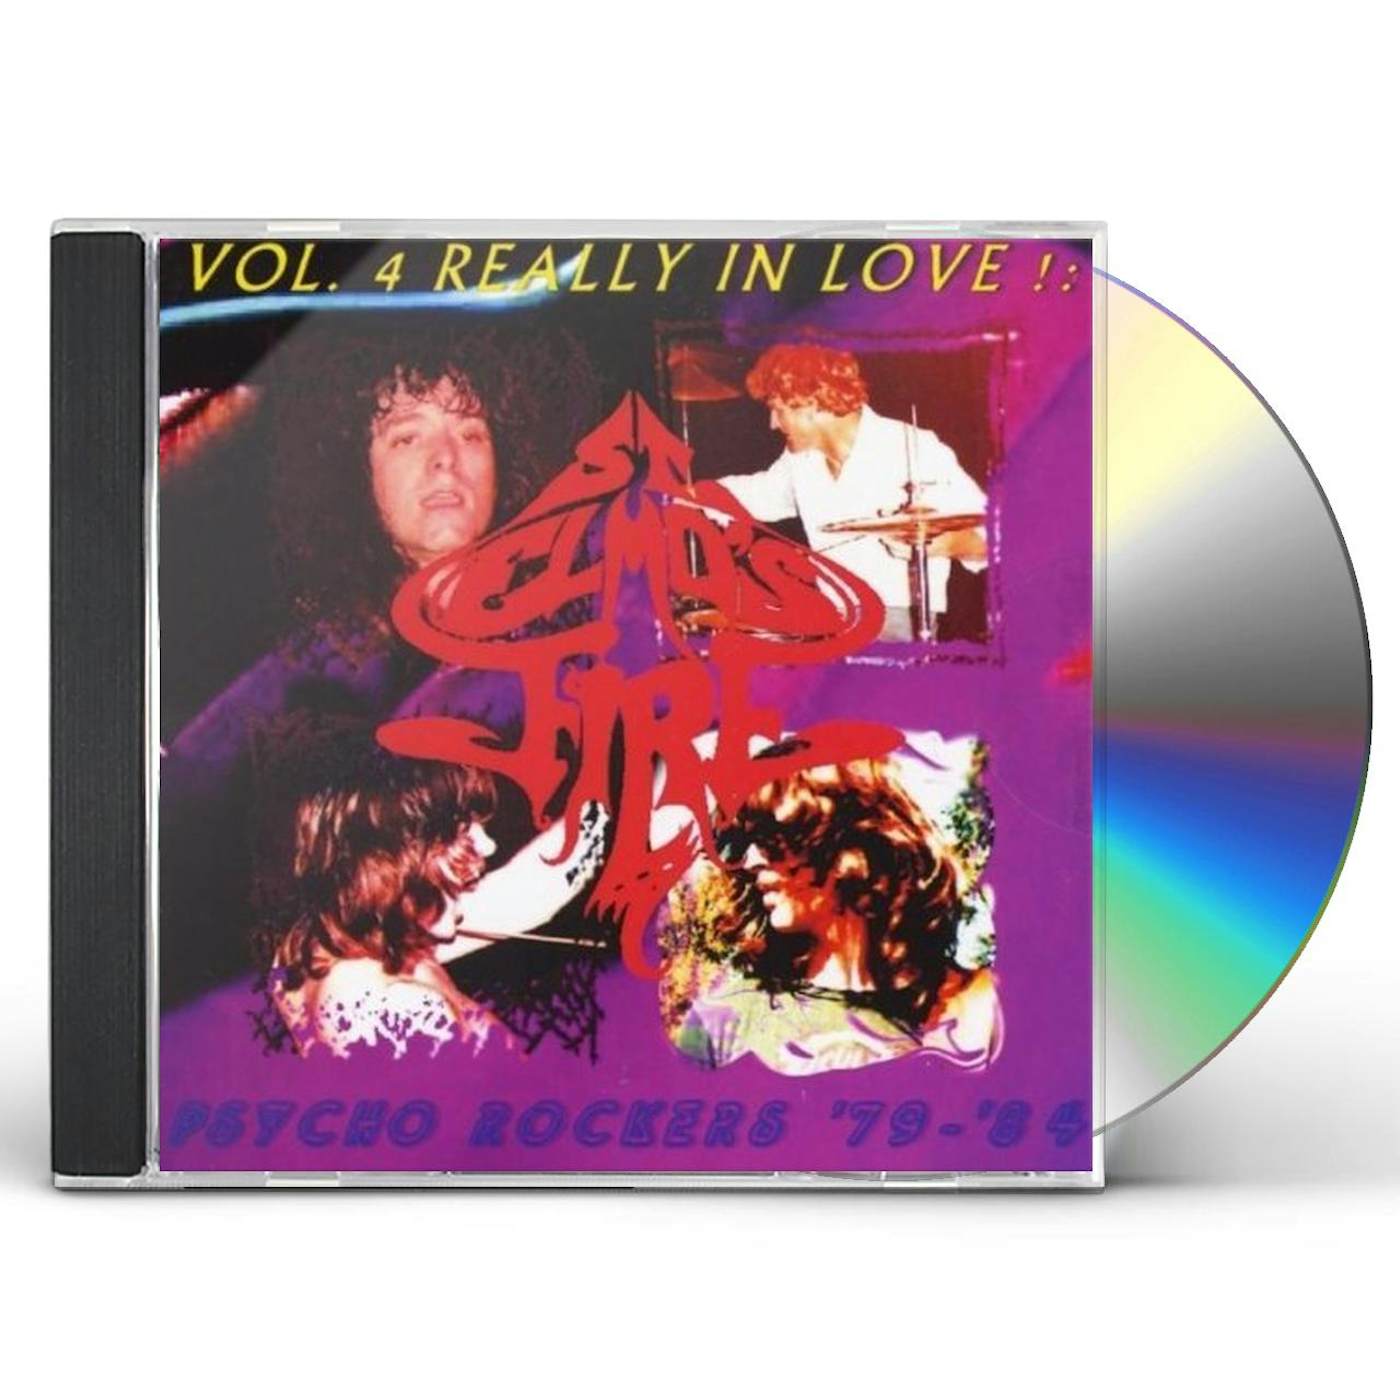 St. Elmo's Fire REALLY IN LOVE!: PSYCHO ROCKERS 1979-84 4 CD